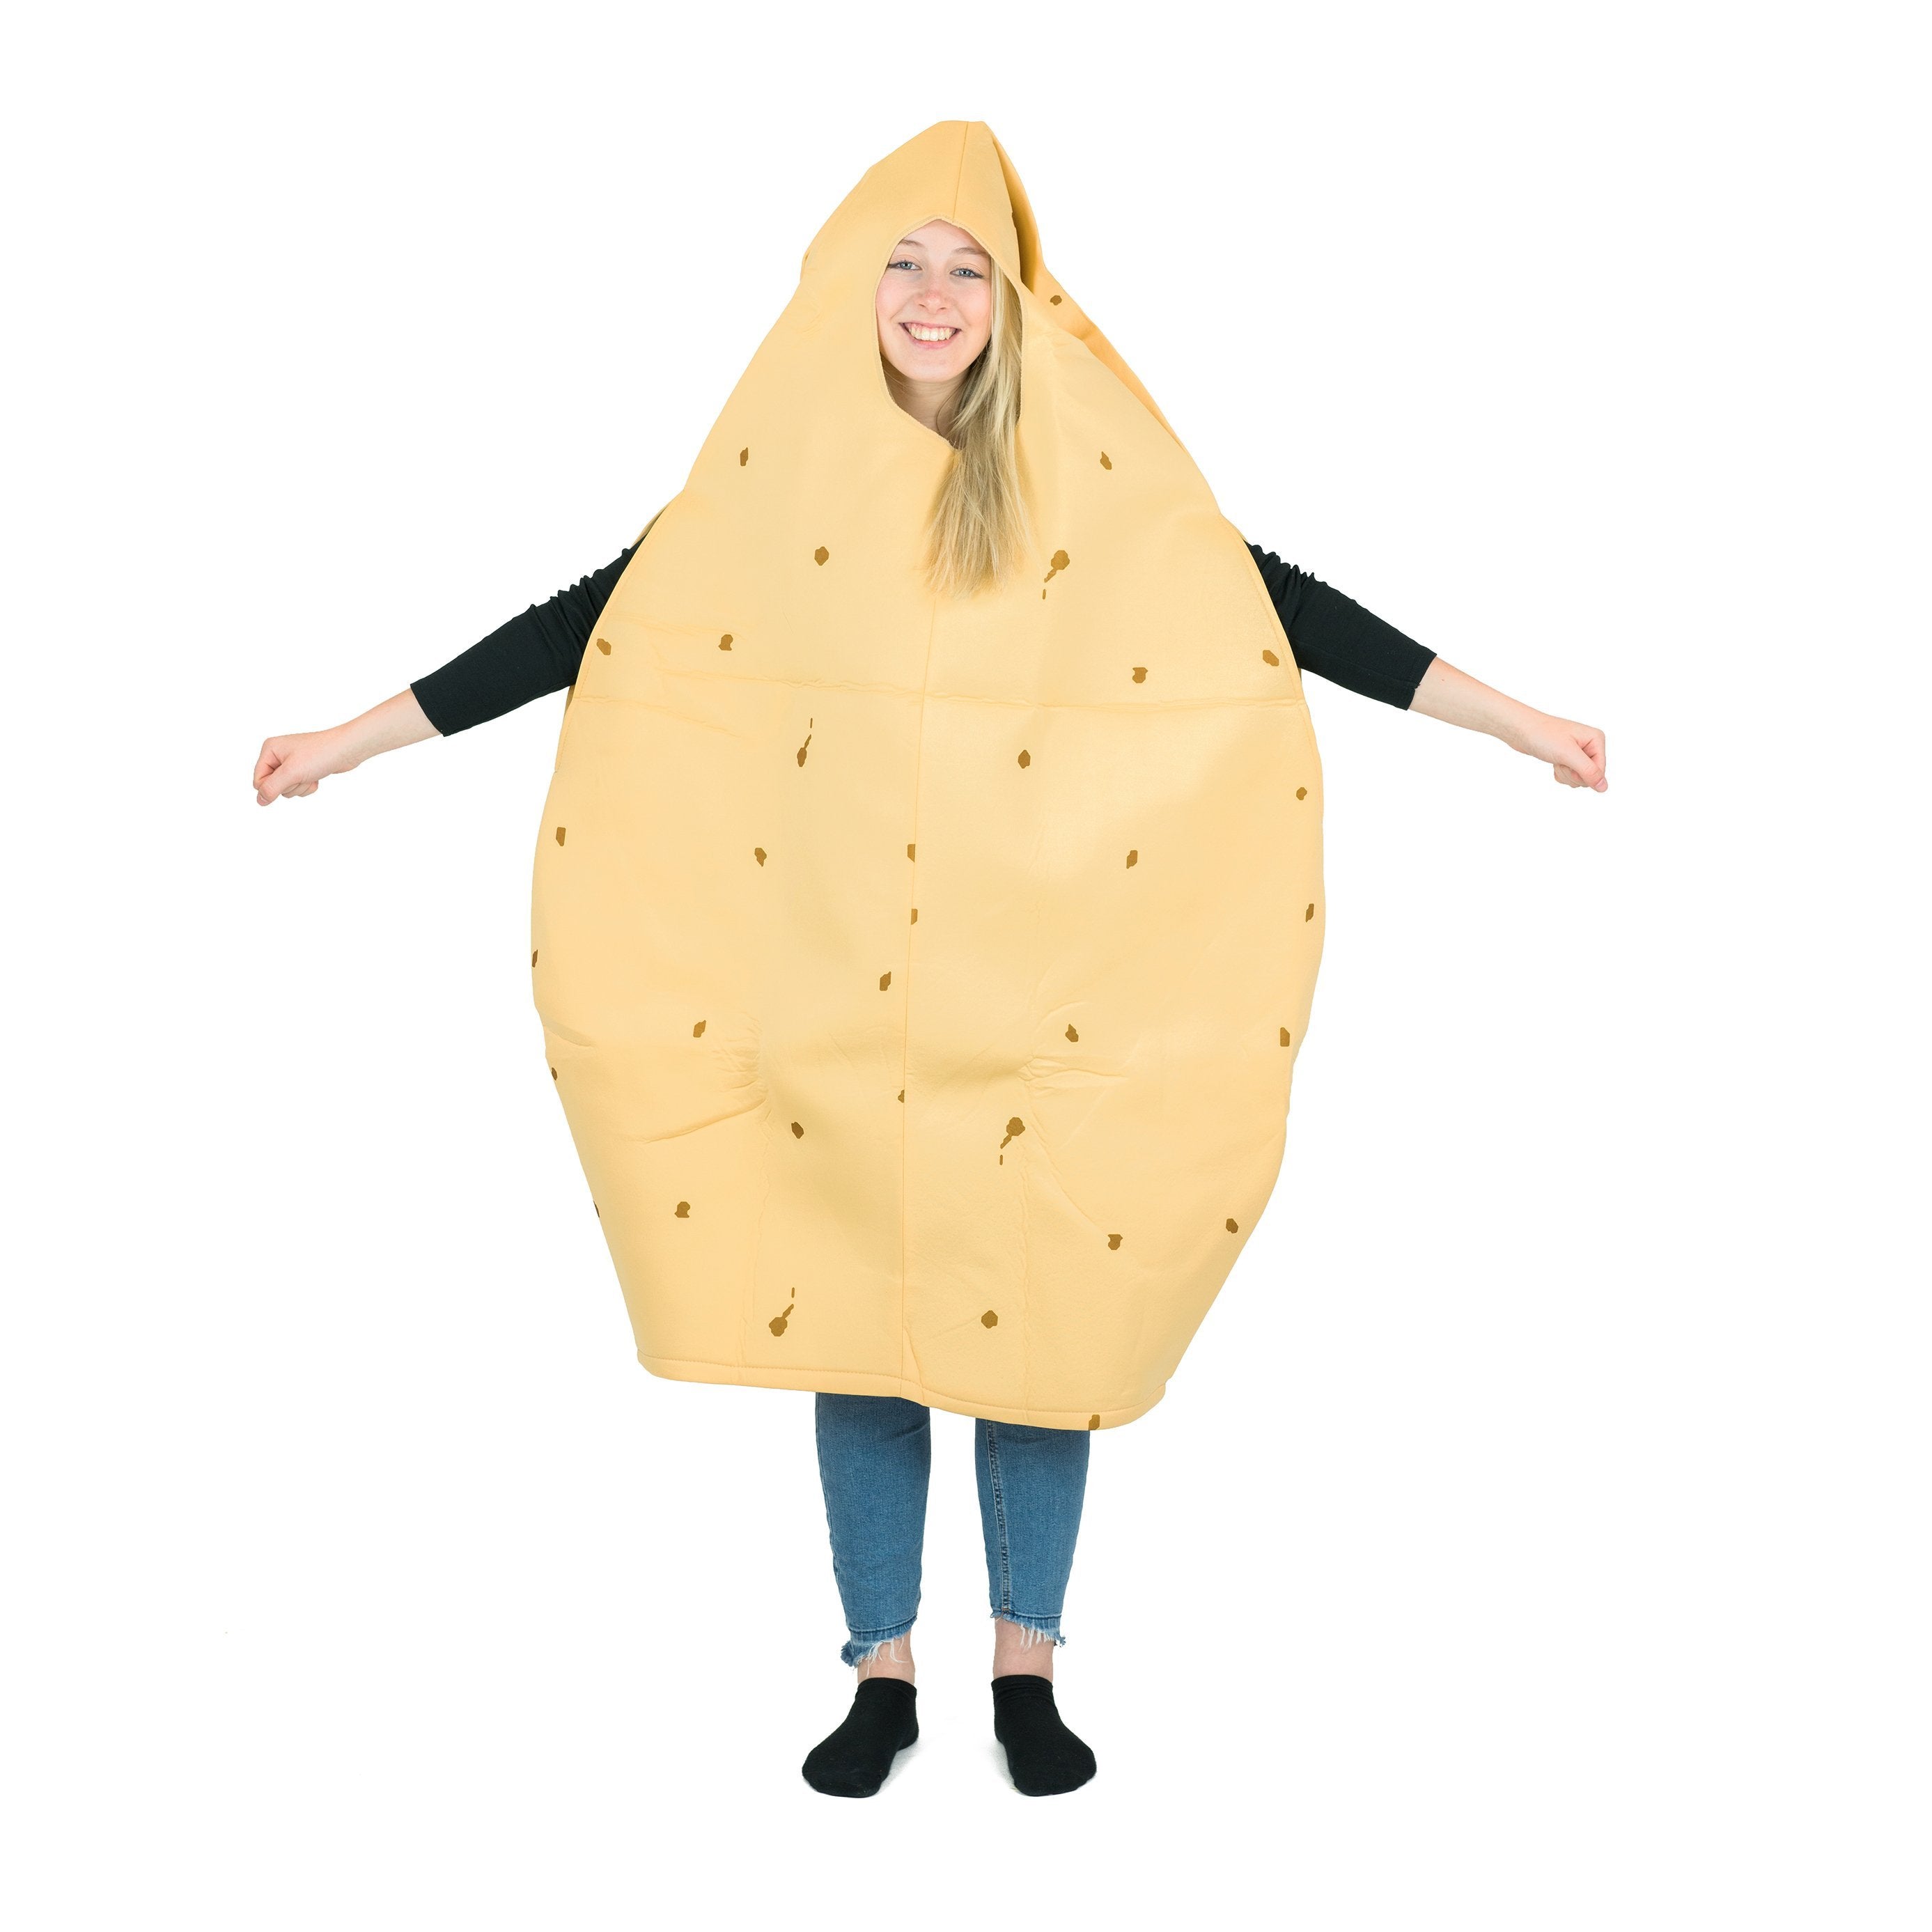 Bodysocks - Potato Costume